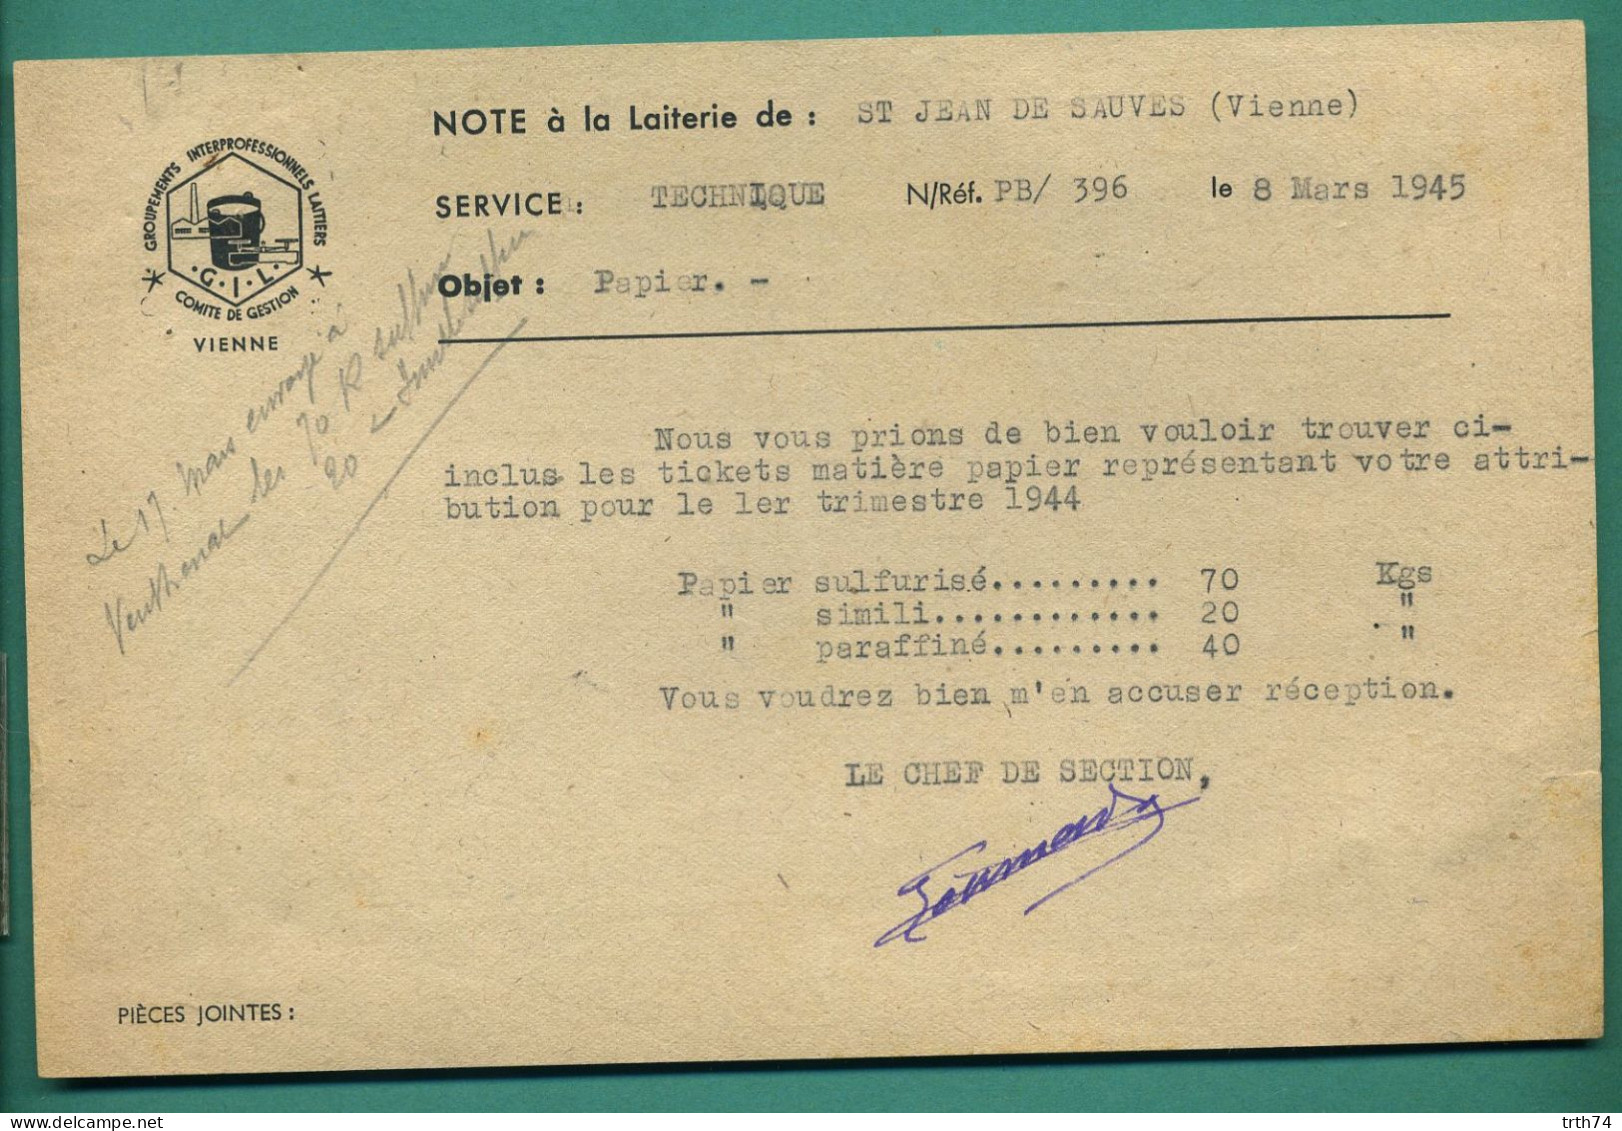 86 Saint Jean De Sauves Groupements Interprofessionnels Laitiers Note à La Laiterie 8 Mars 1945 - Alimentos